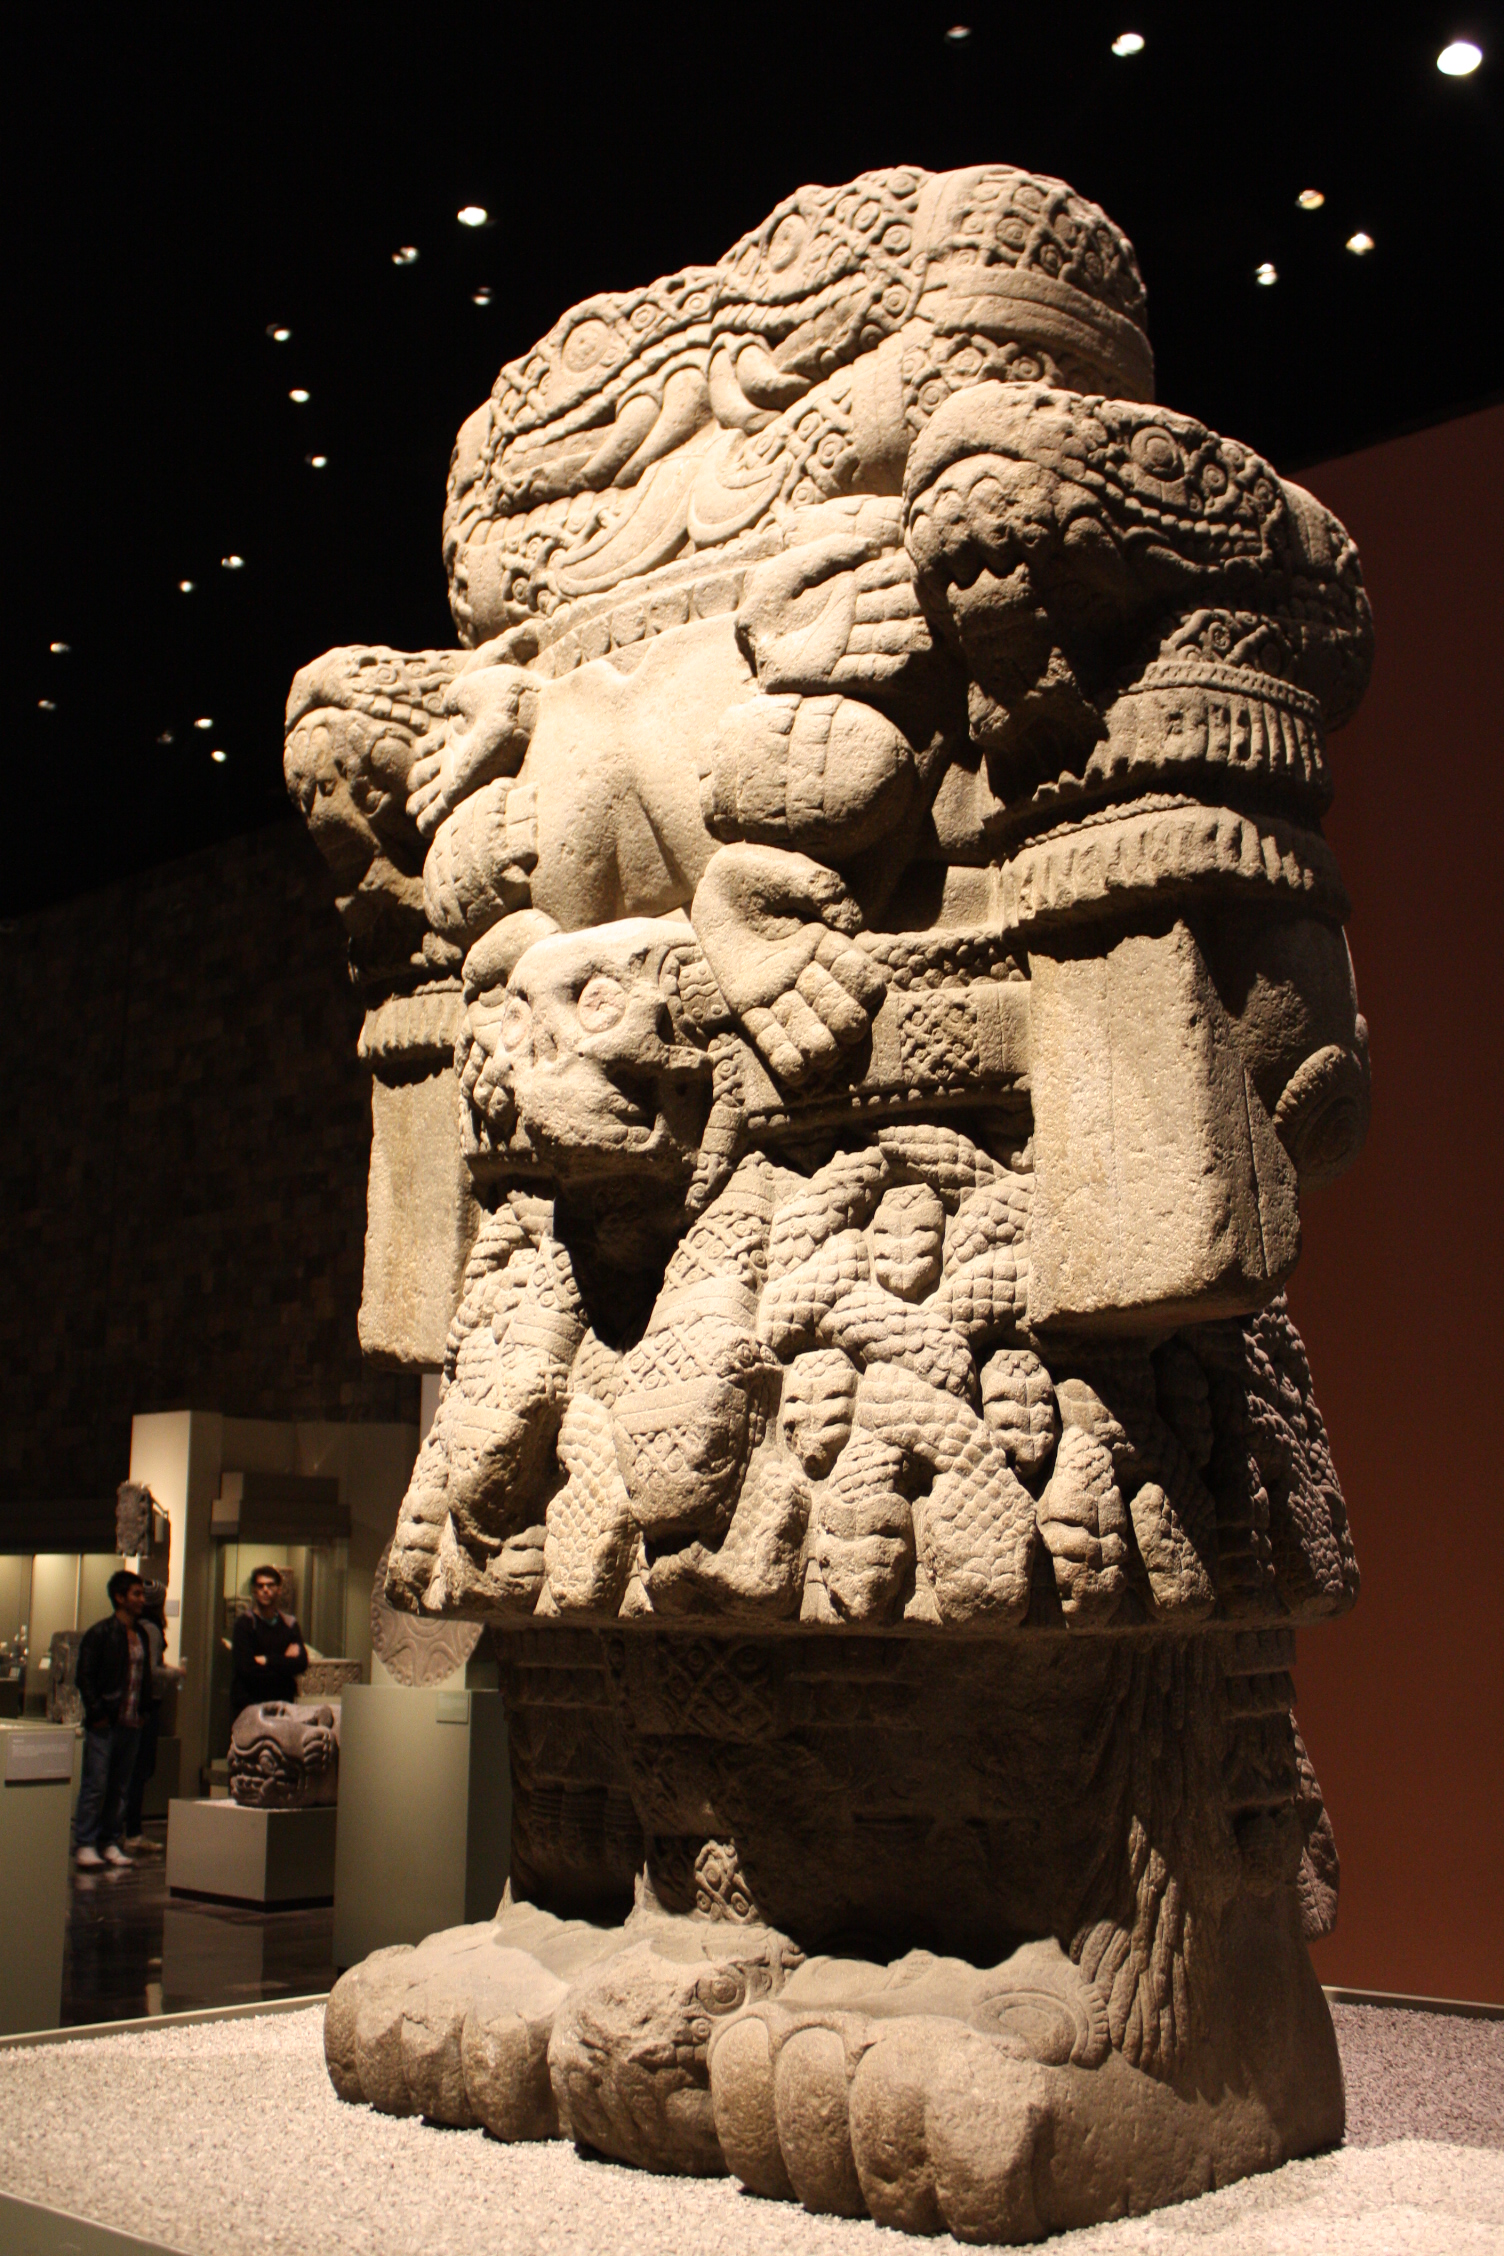 Coatlicue (Side View), basalt, ca. 1500 (Museo Nacional de Antropología, Mexico City). Photo by David Cabrera, CC BY-SA 2.0.